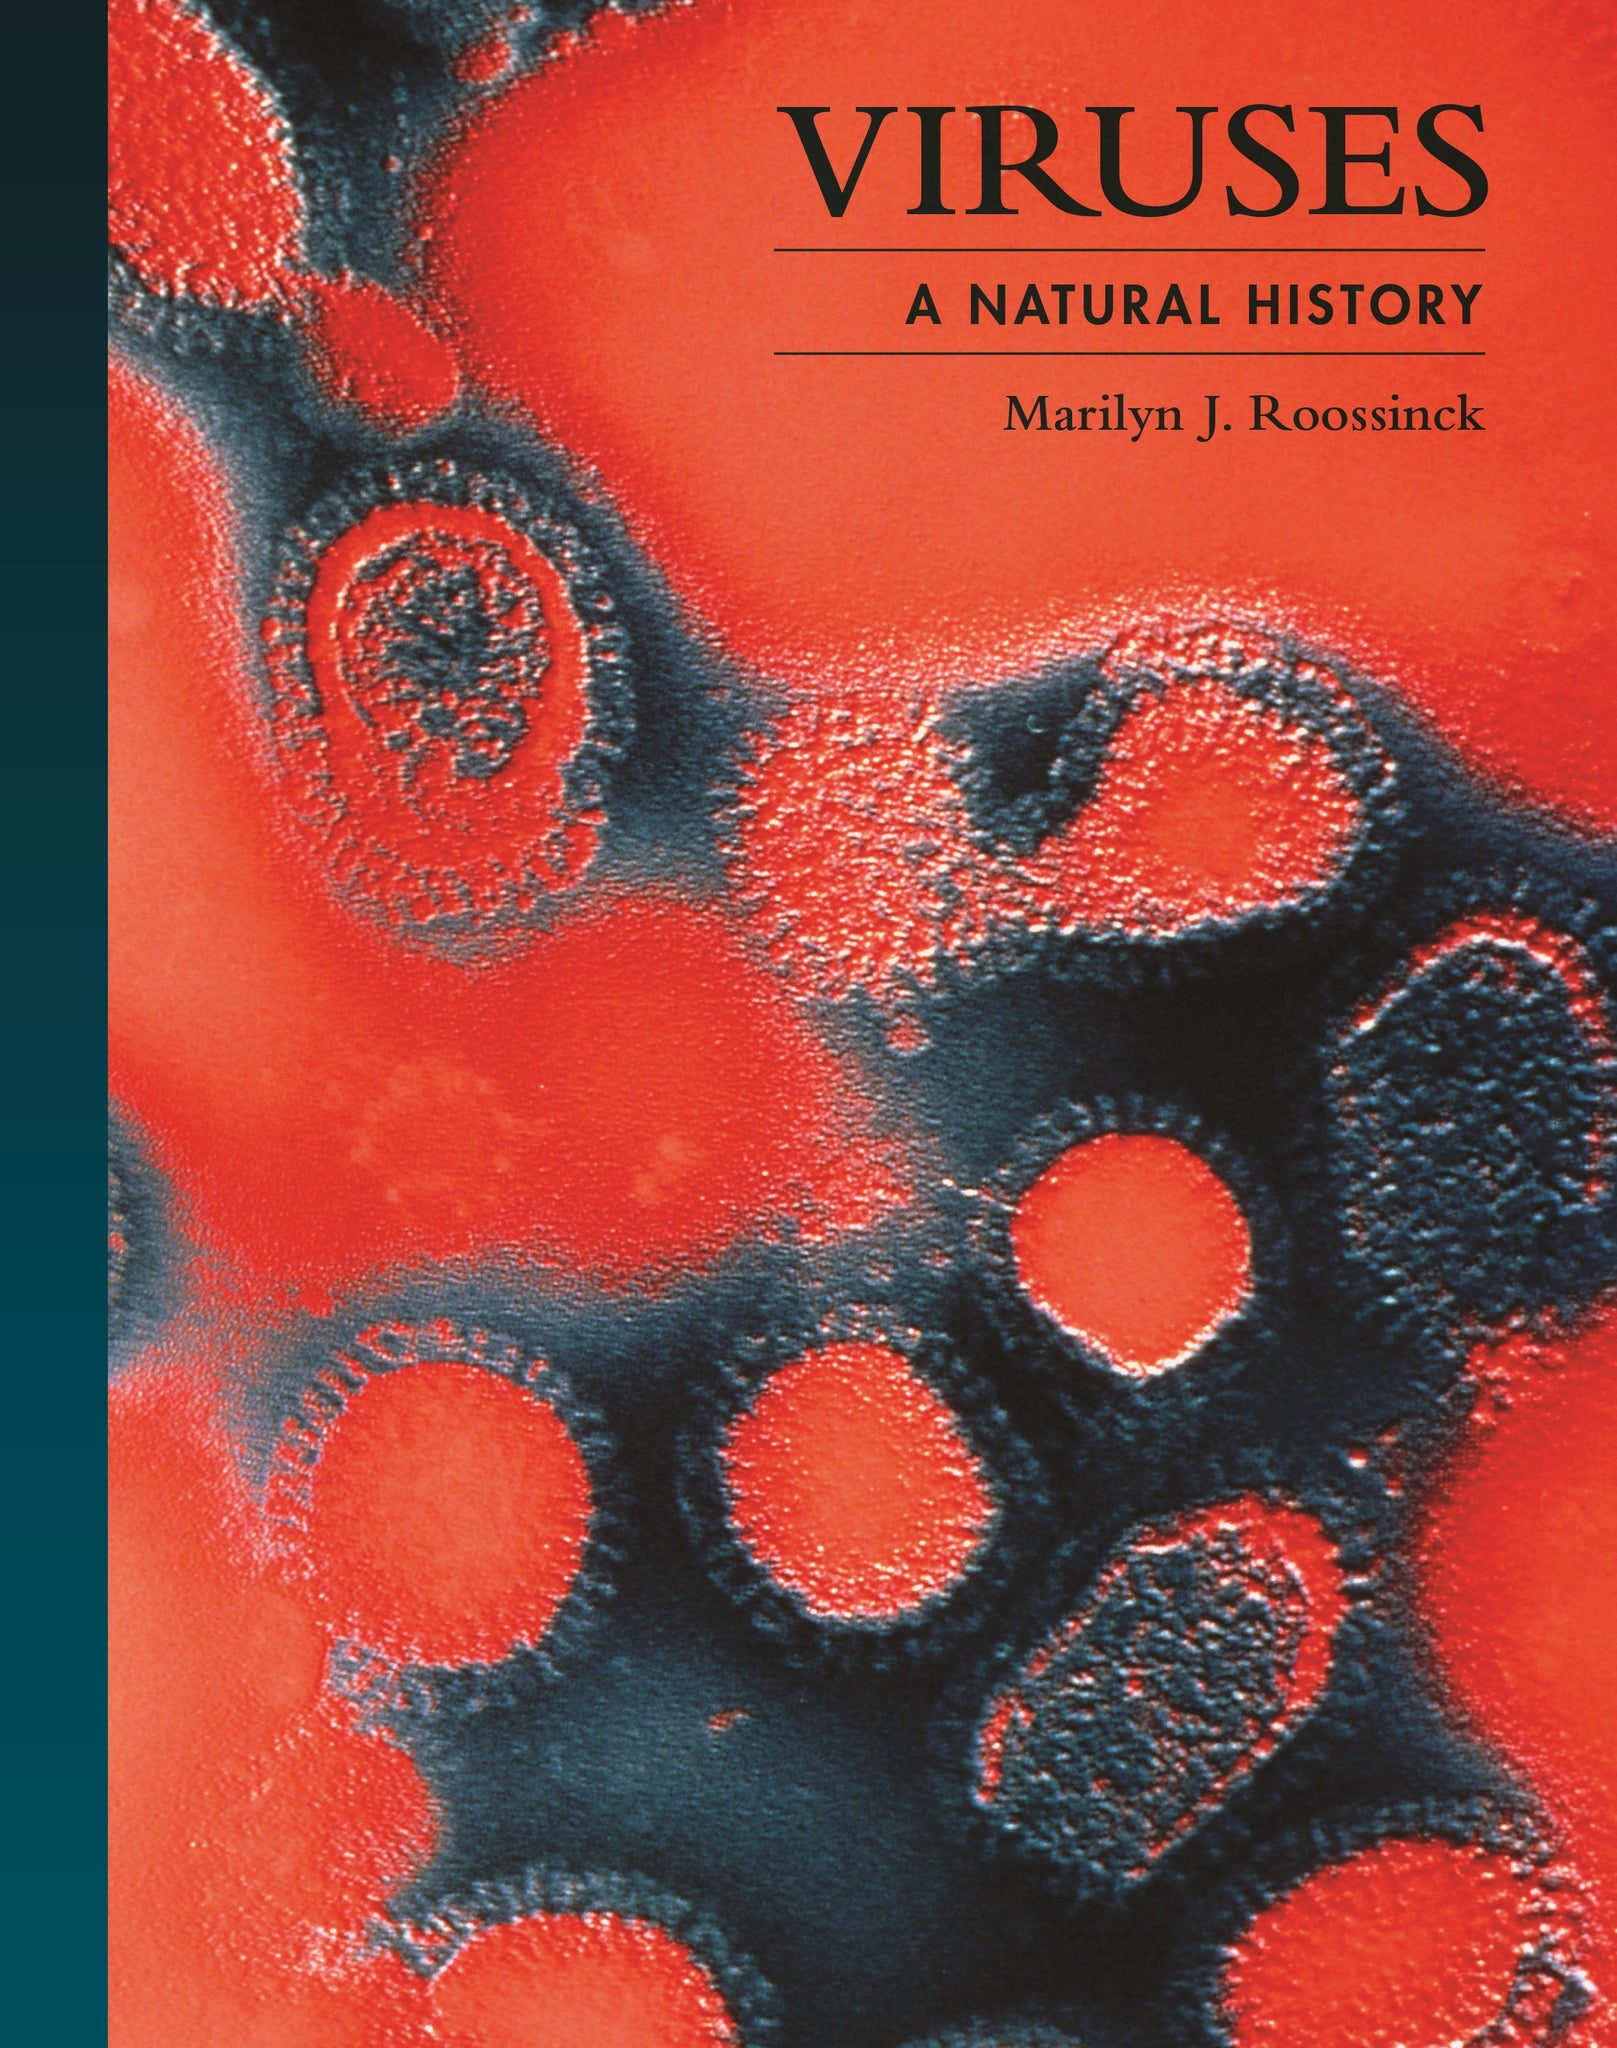 Viruses: A Natural History